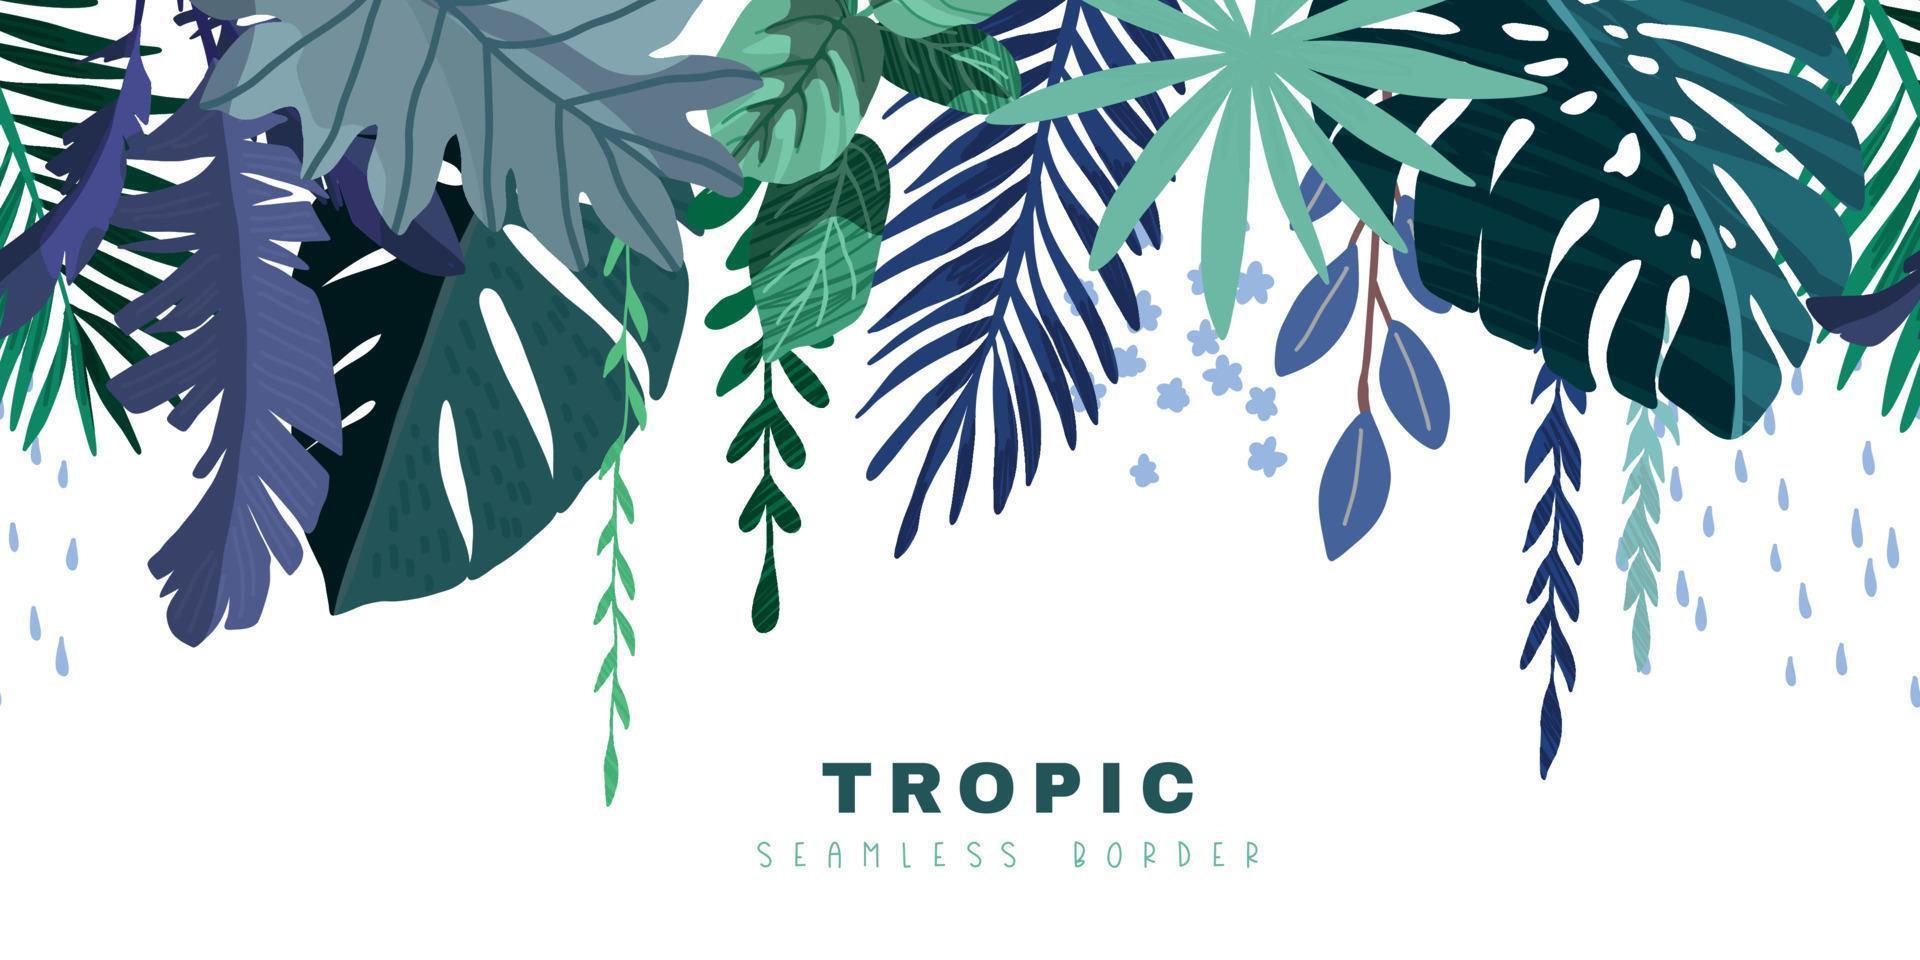 bordure transparente tropicale avec monstera bleu et feuilles de palmier vecteur